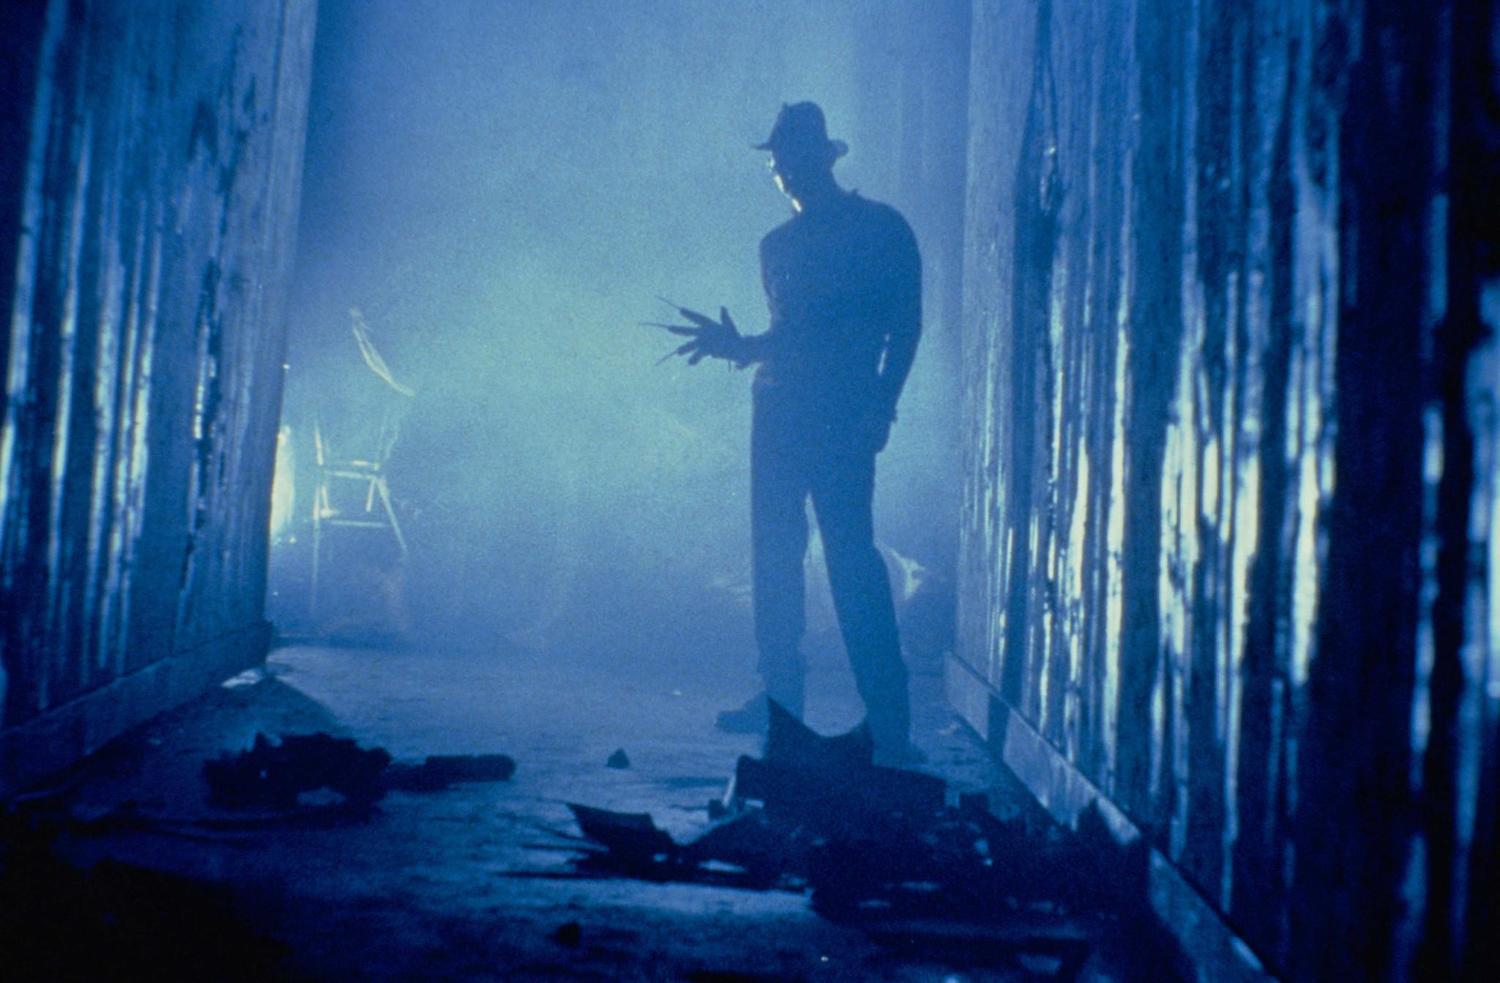 15. A Nightmare on Elm Street